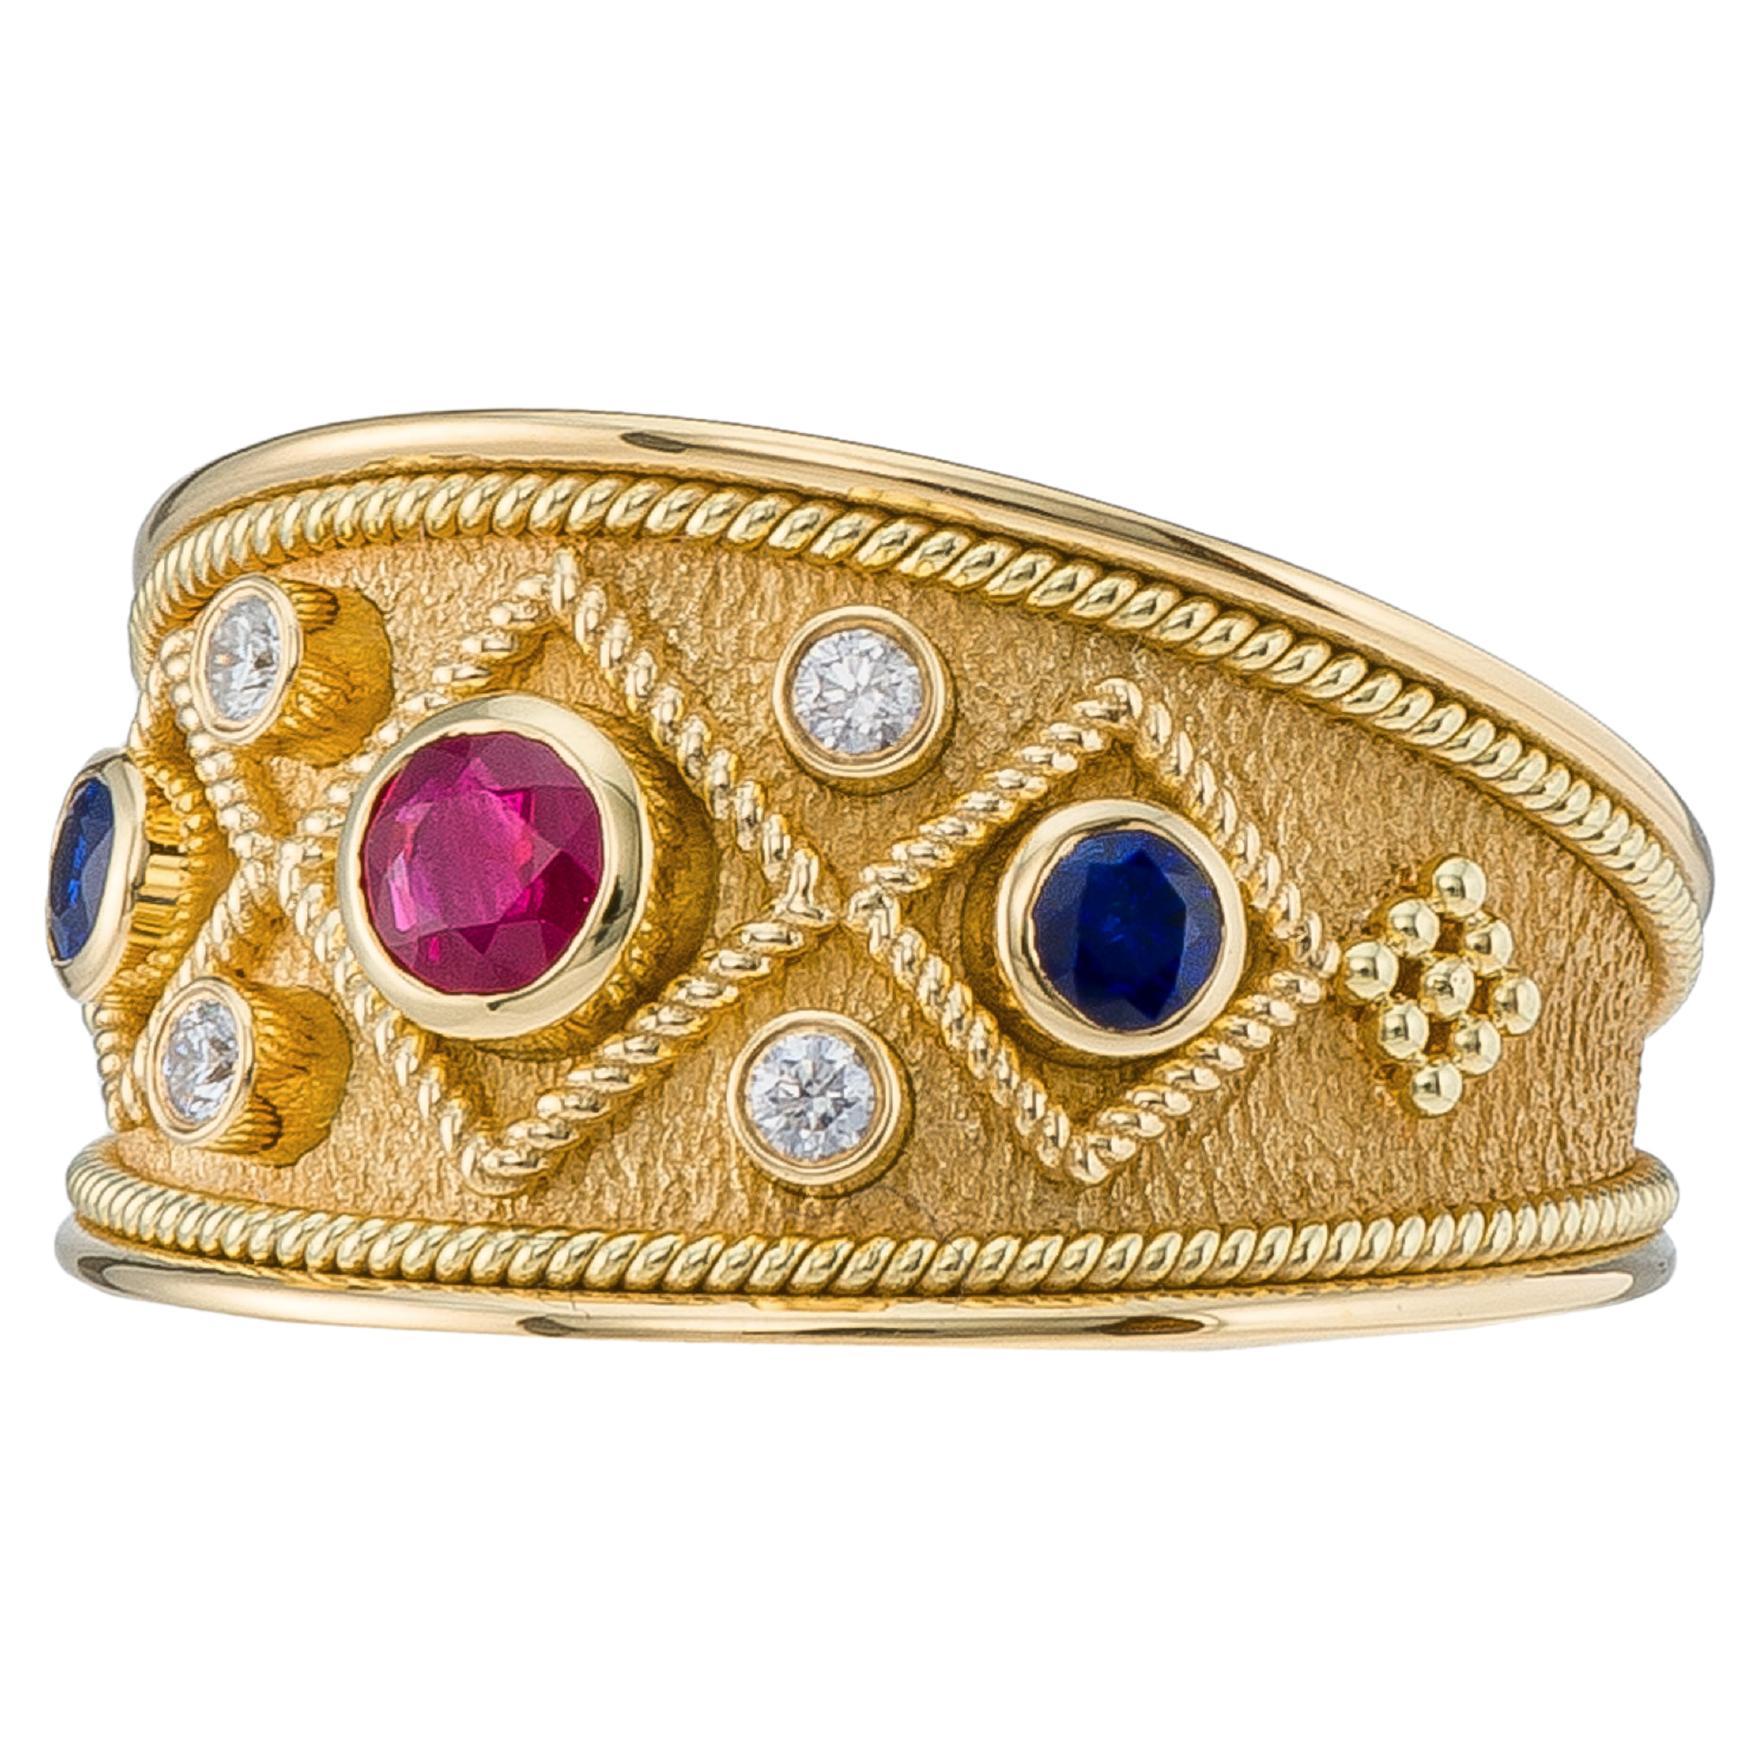 Bague byzantine avec rubis, saphirs et diamants